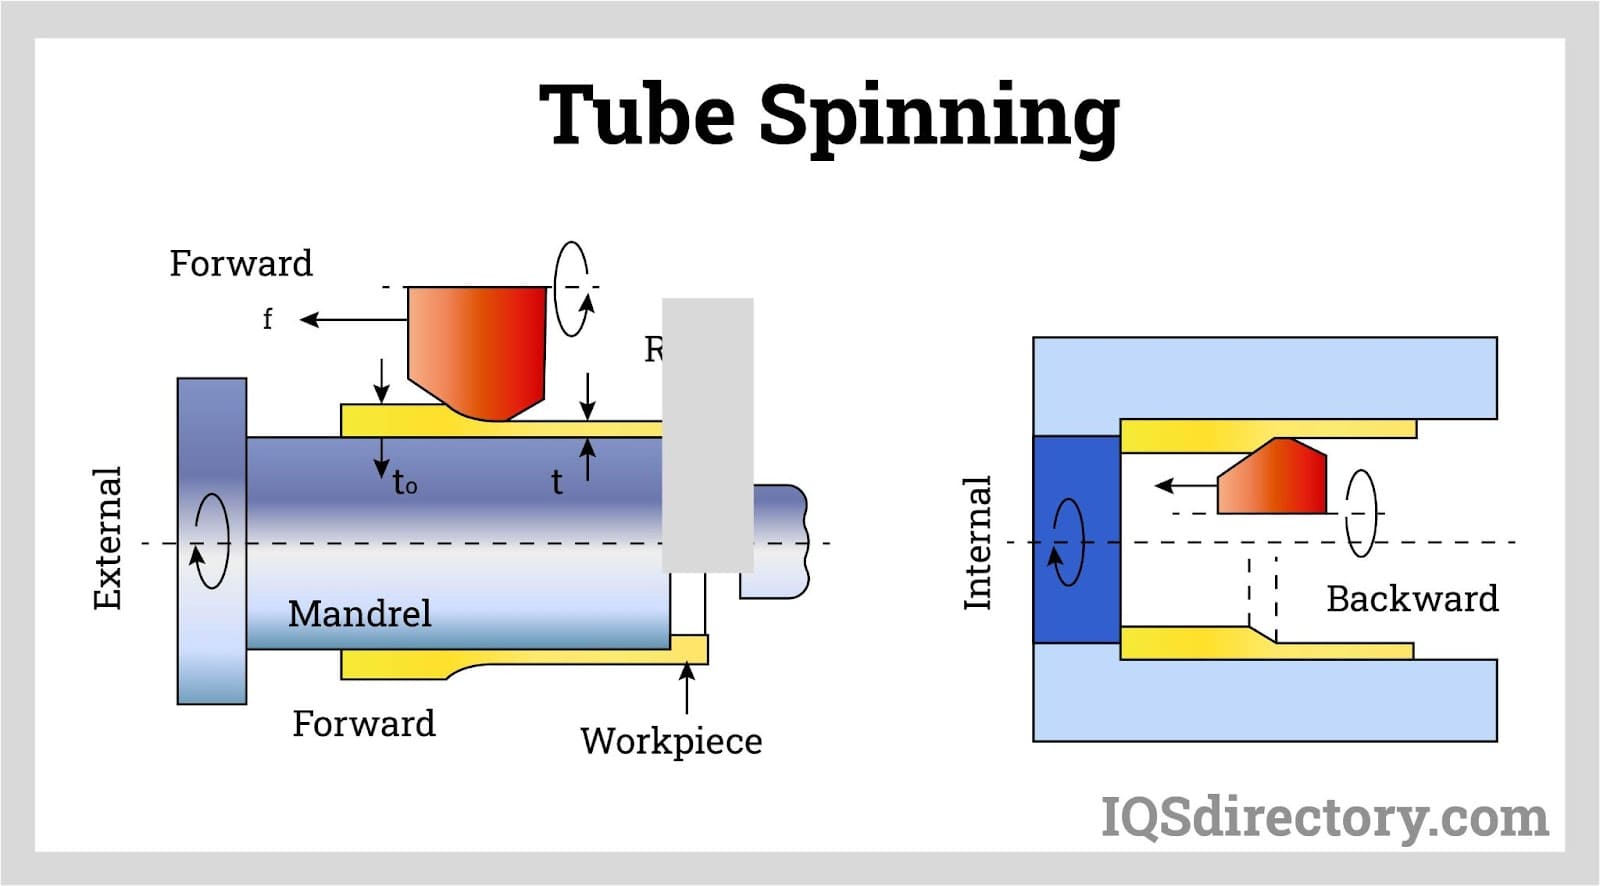 Tube Spinning